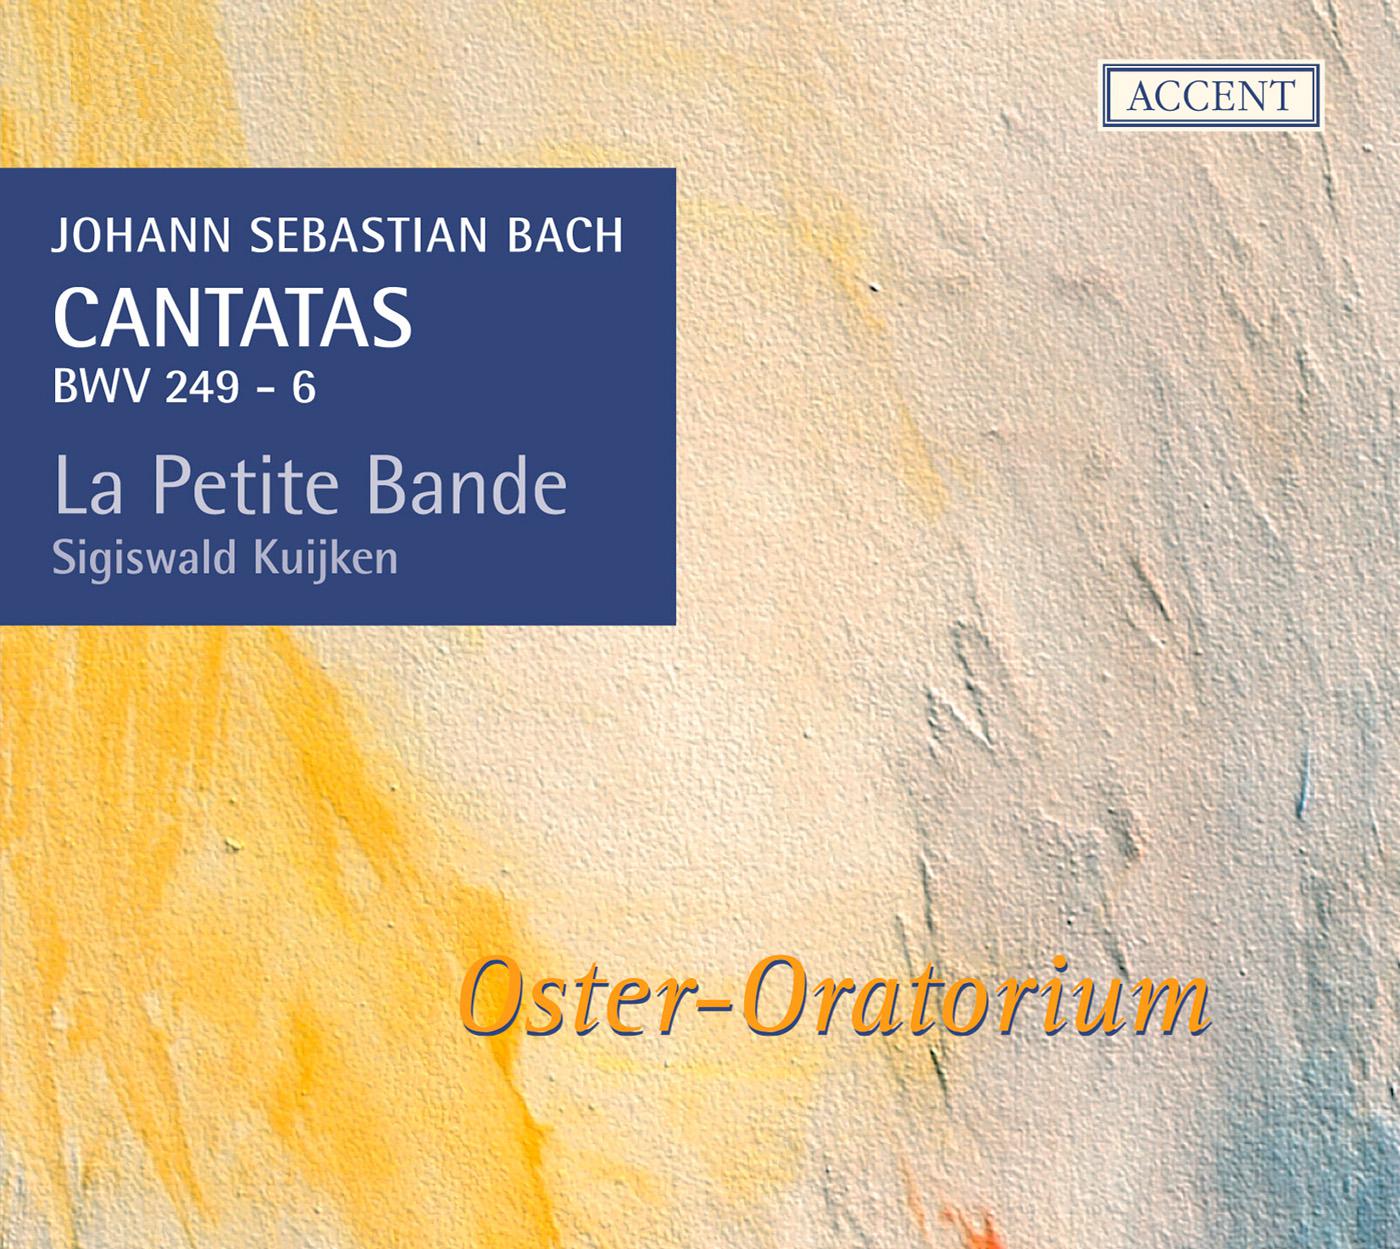 Oster-Oratorium, BWV 249: Adagio